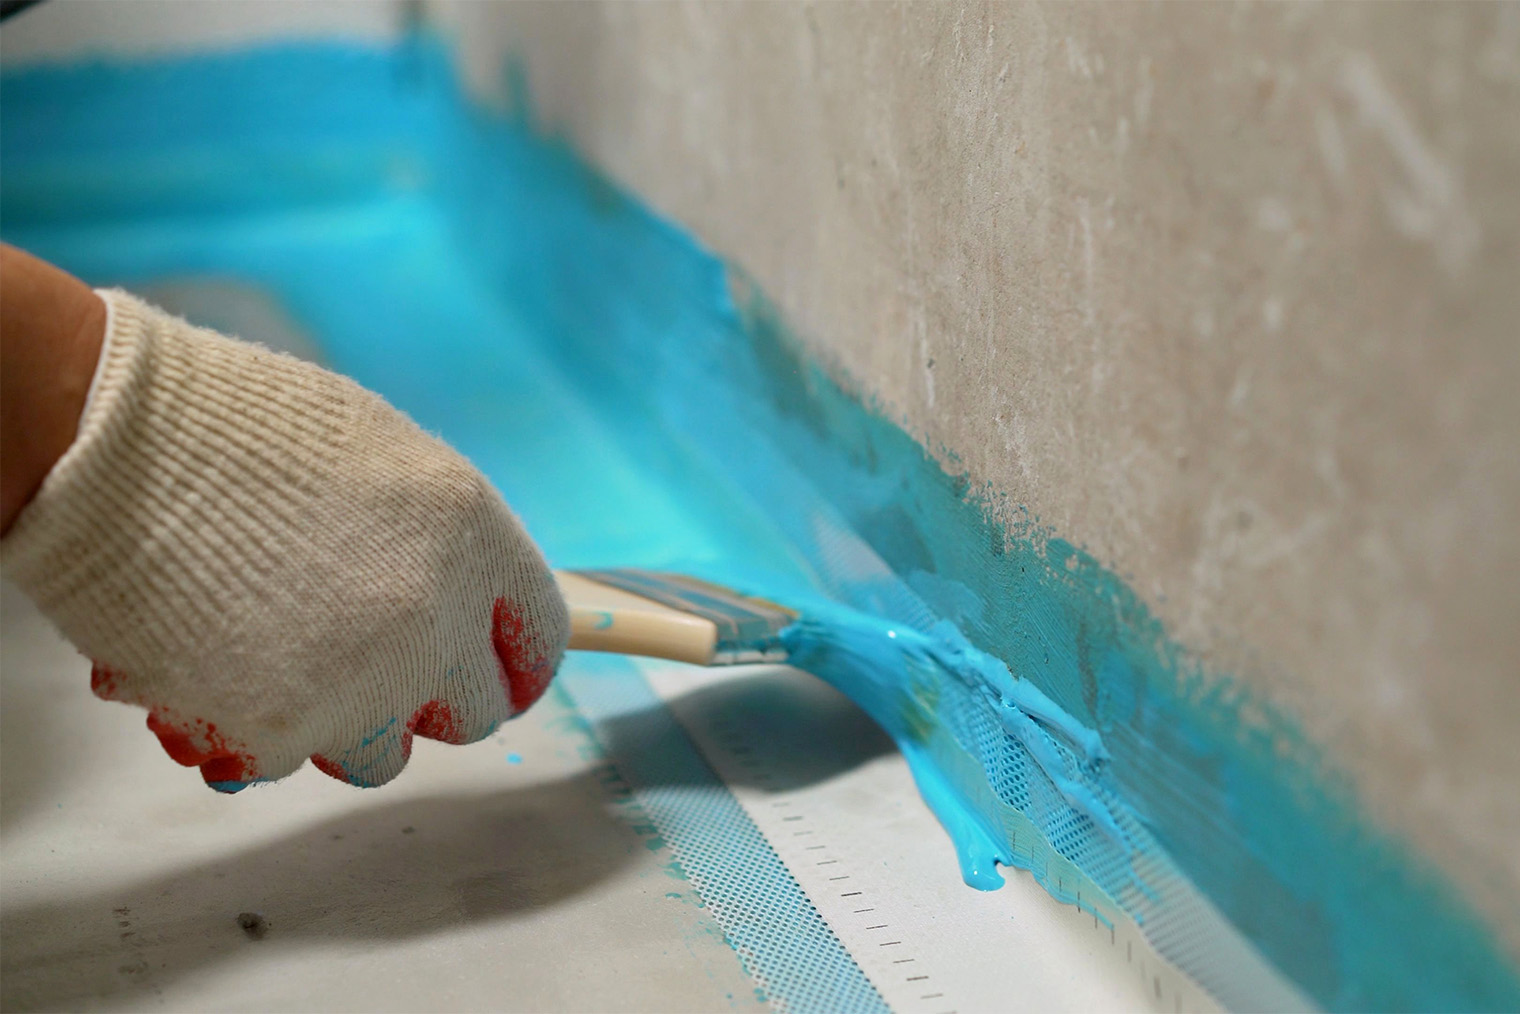 Вдоль стыка пола и стены клеят гидроизоляционную ленту, а сверху тщательно промазывают мастикой. Фотография: Sidorov_Ruslan / Shutterstock